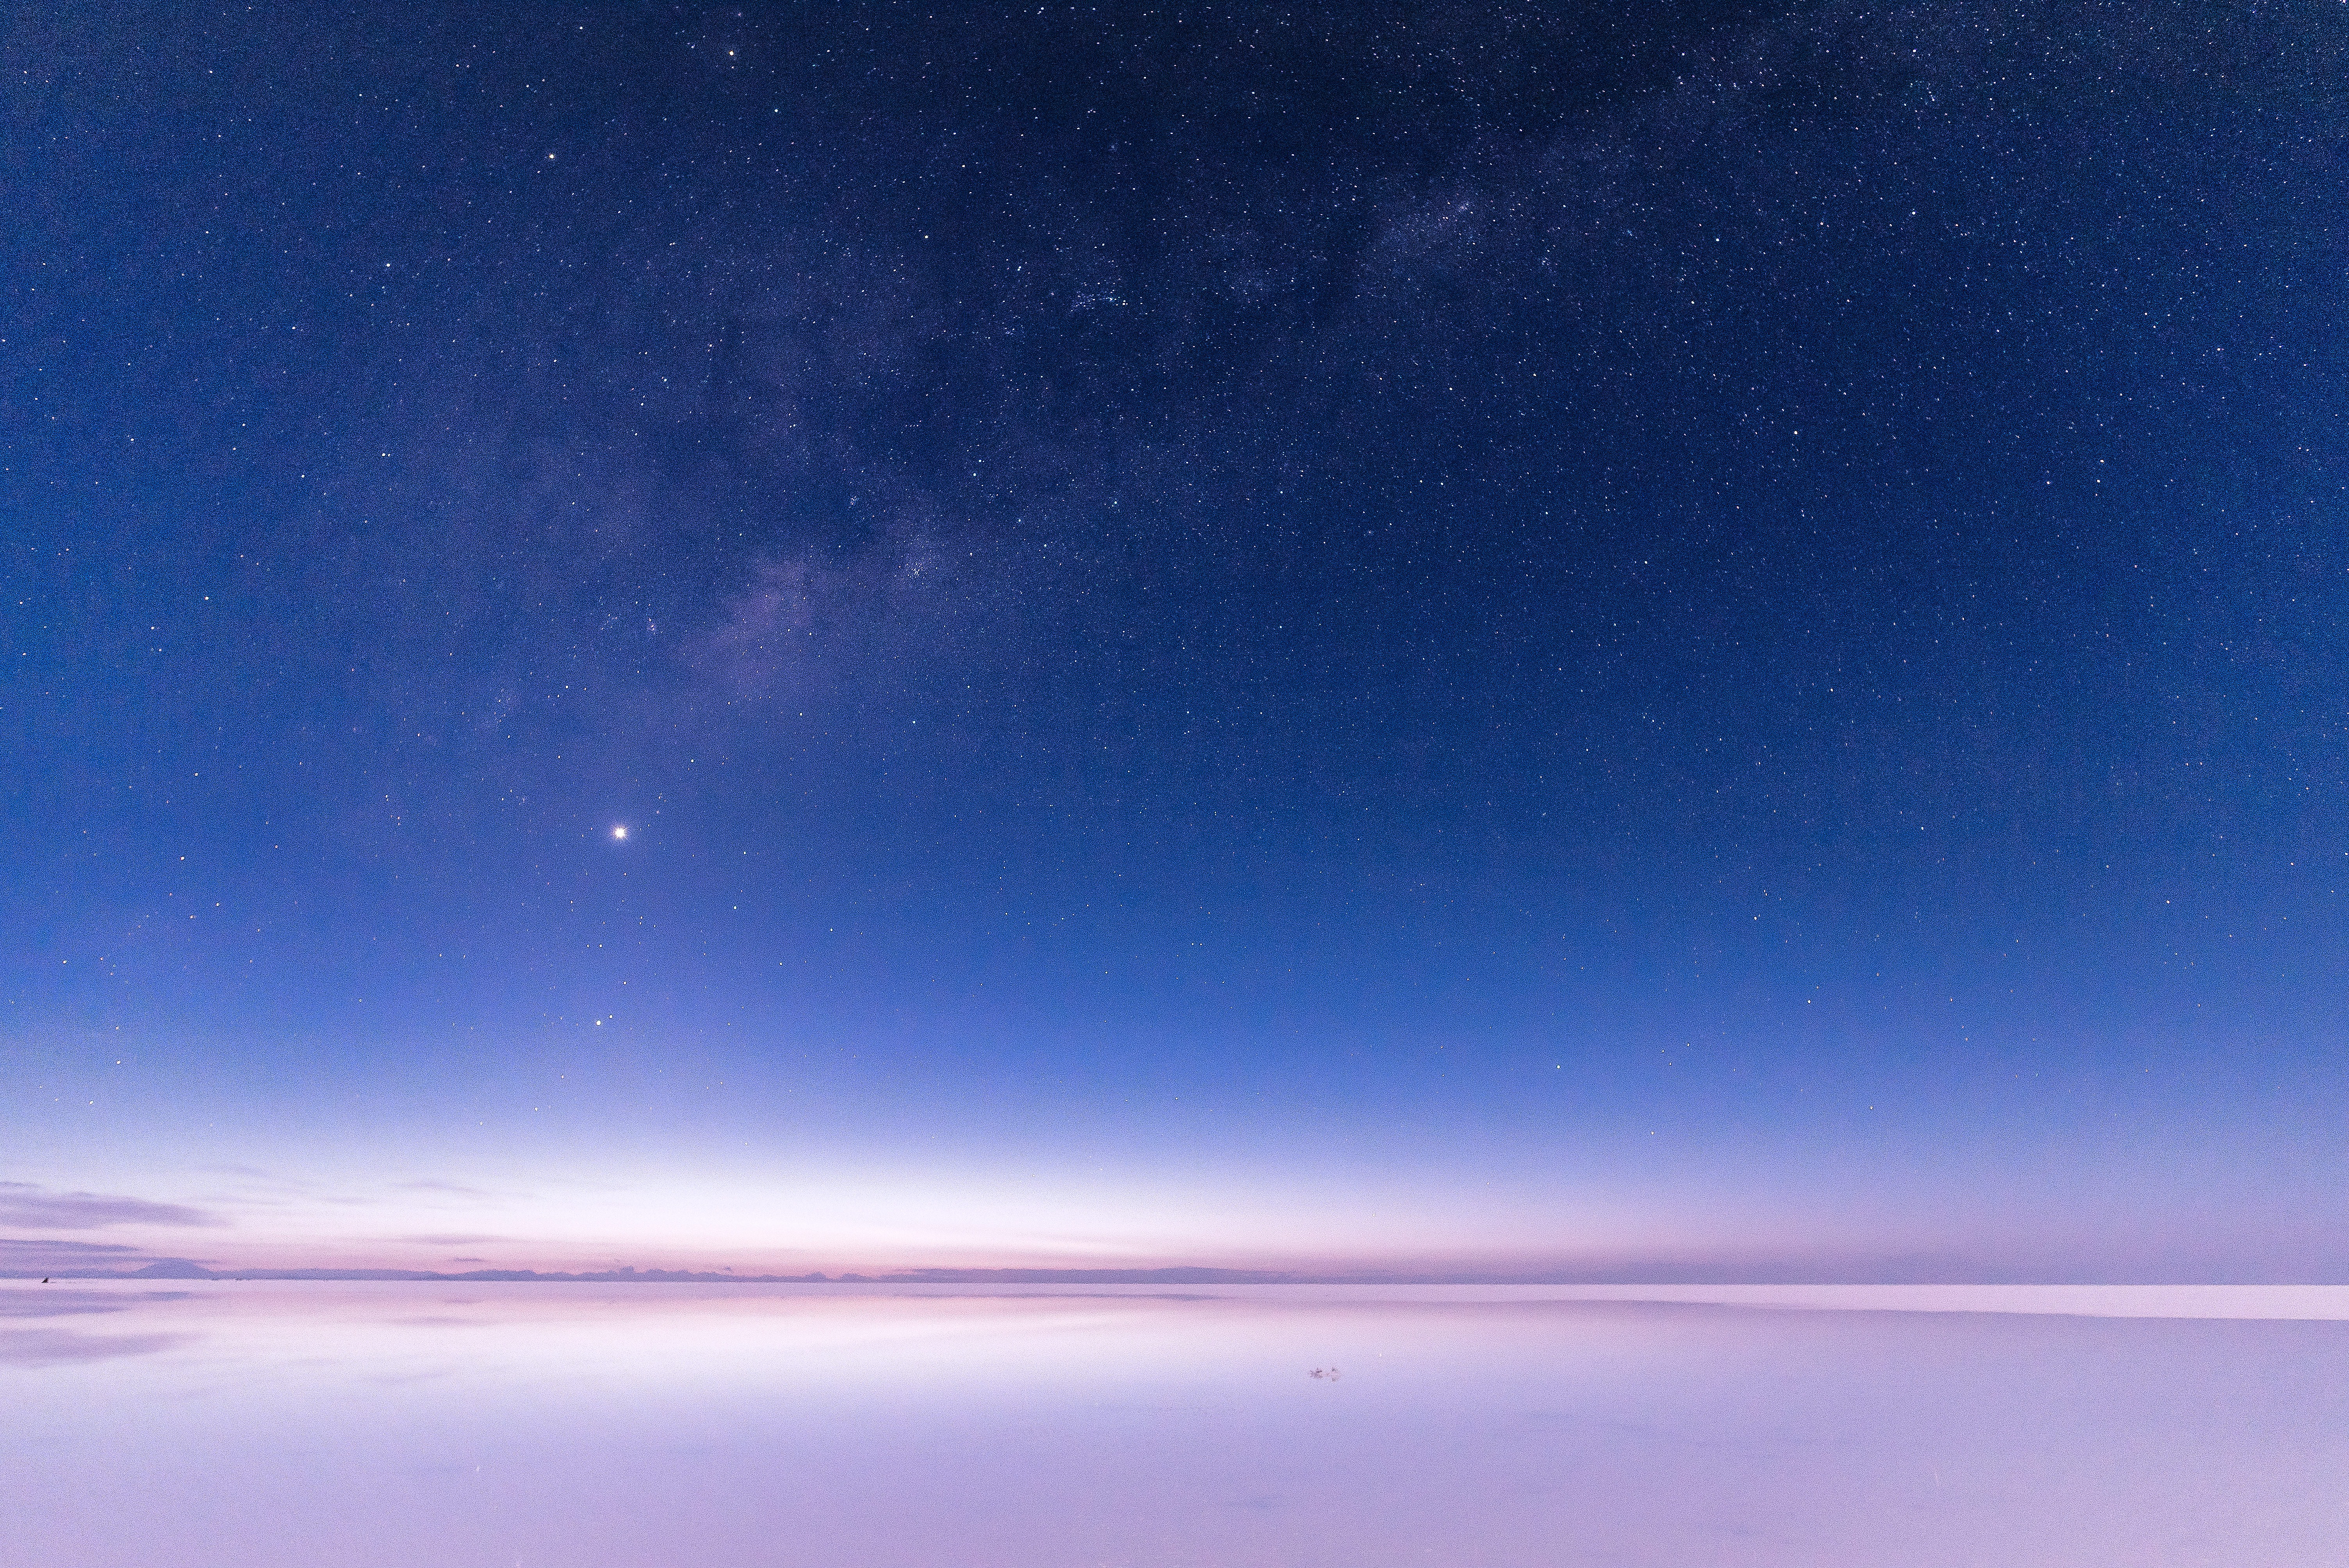 ウユニ塩湖の星空の写真 画像 フリー素材 ぱくたそ